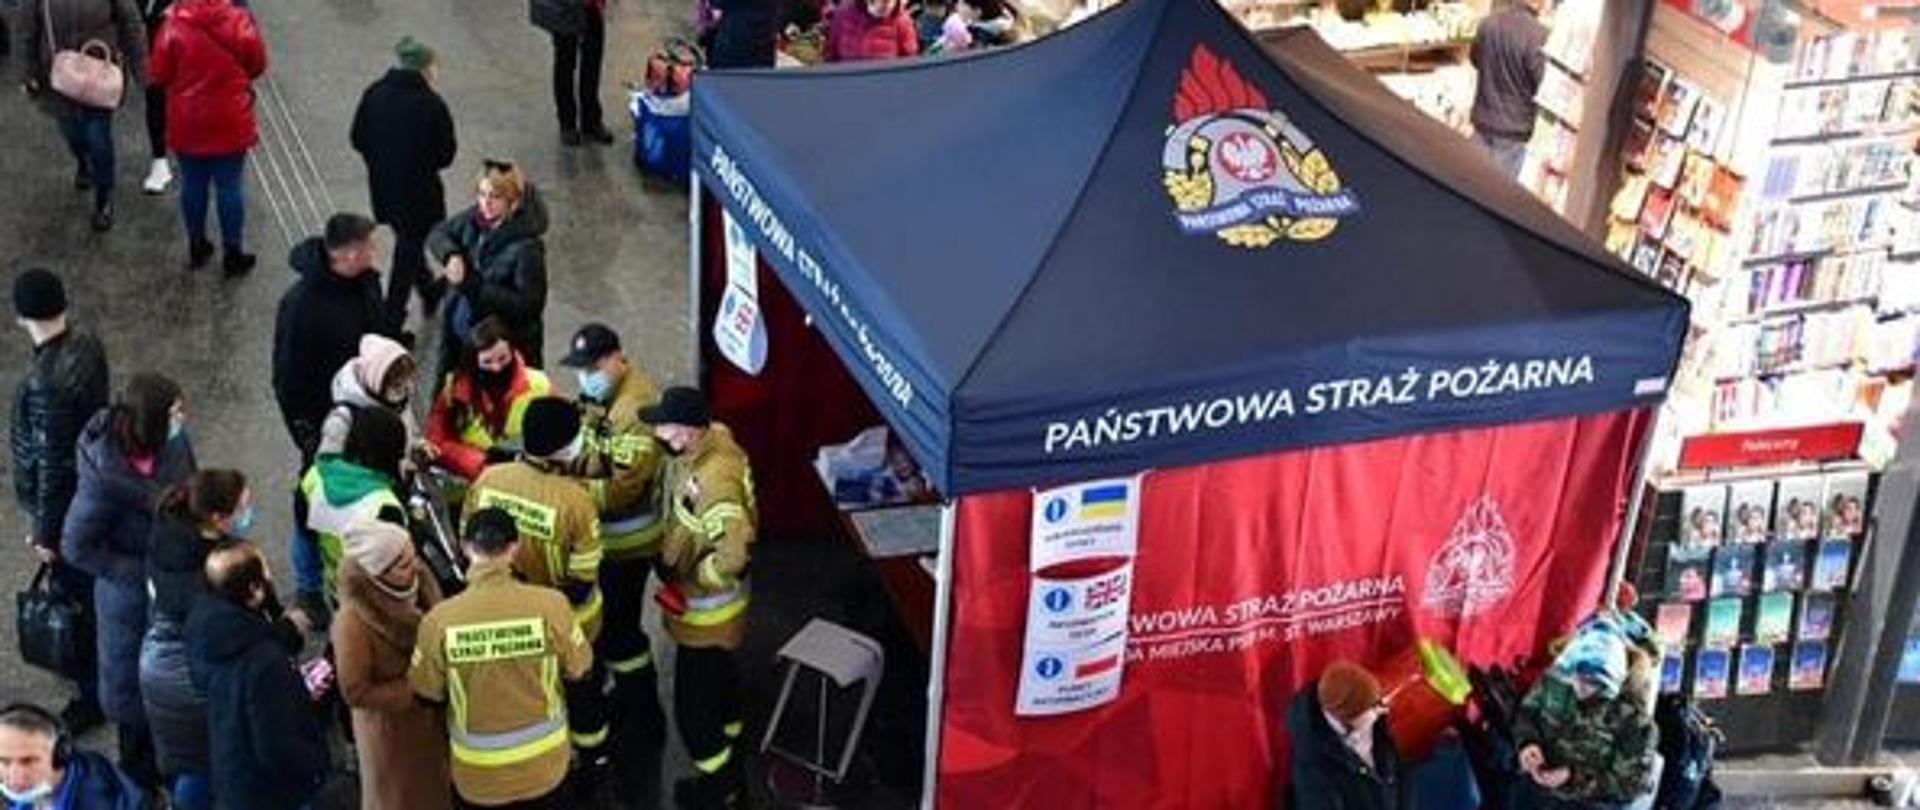 Zdjęcie przedstawia namiot Państwowej Straży Pożarnej wokół, którego zgromadzeni są strażacy oraz ludzie, którym strażacy udzielają niezbędnej pomocy